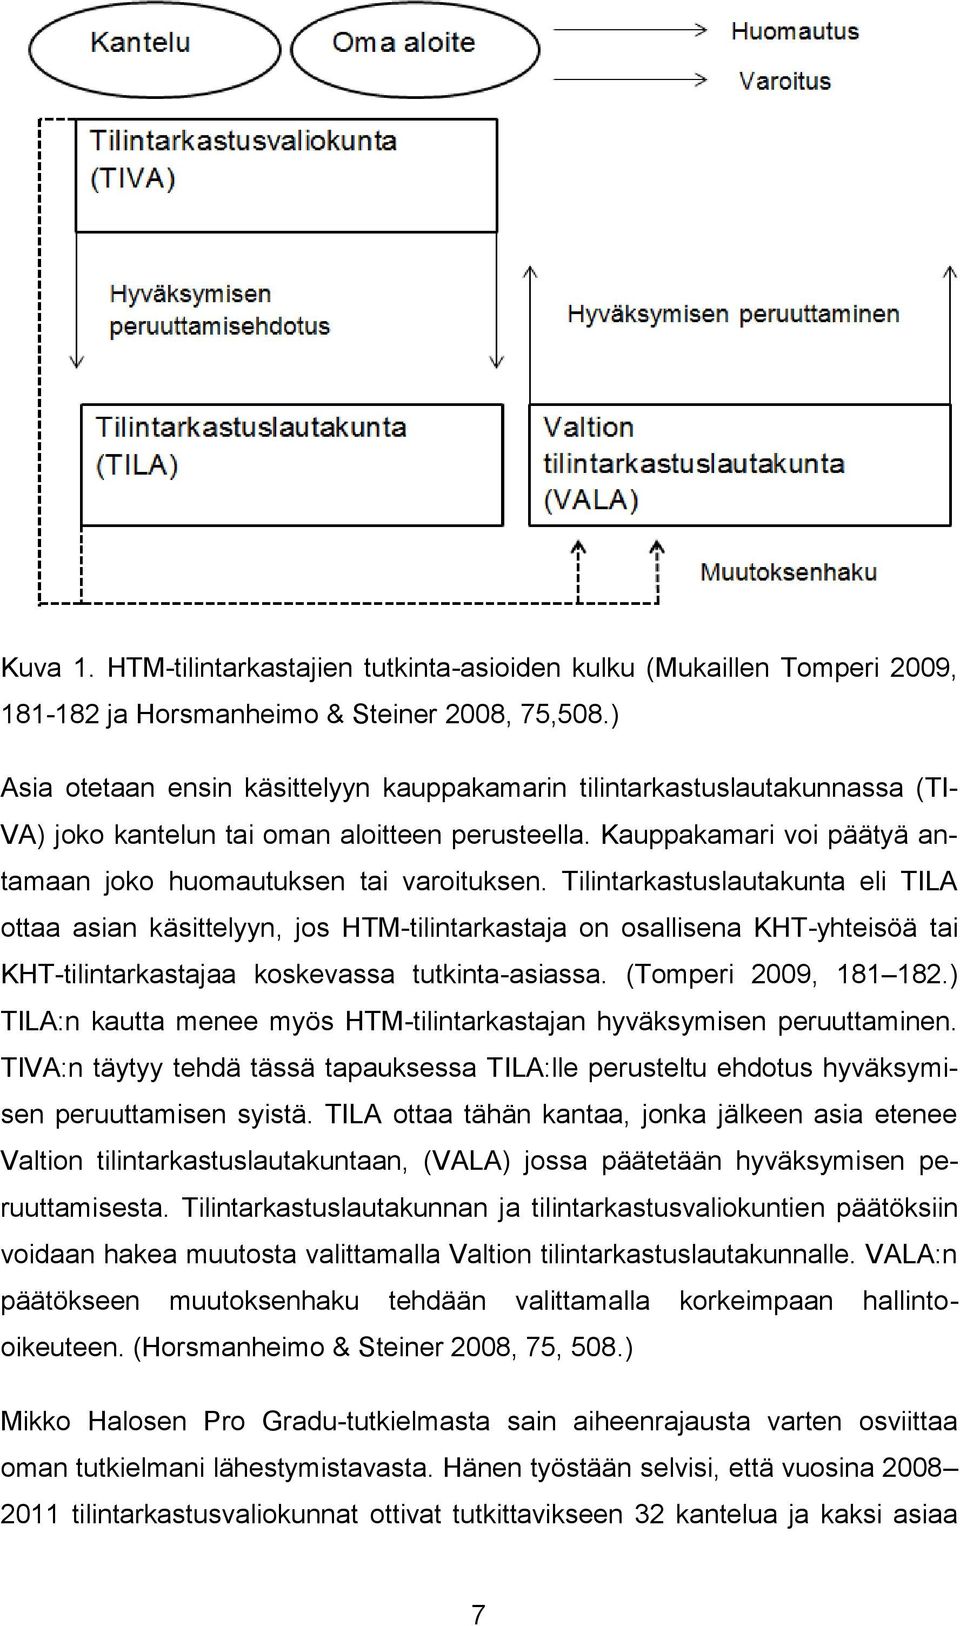 Tilintarkastuslautakunta eli TILA ottaa asian käsittelyyn, jos HTM-tilintarkastaja on osallisena KHT-yhteisöä tai KHT-tilintarkastajaa koskevassa tutkinta-asiassa. (Tomperi 2009, 181 182.